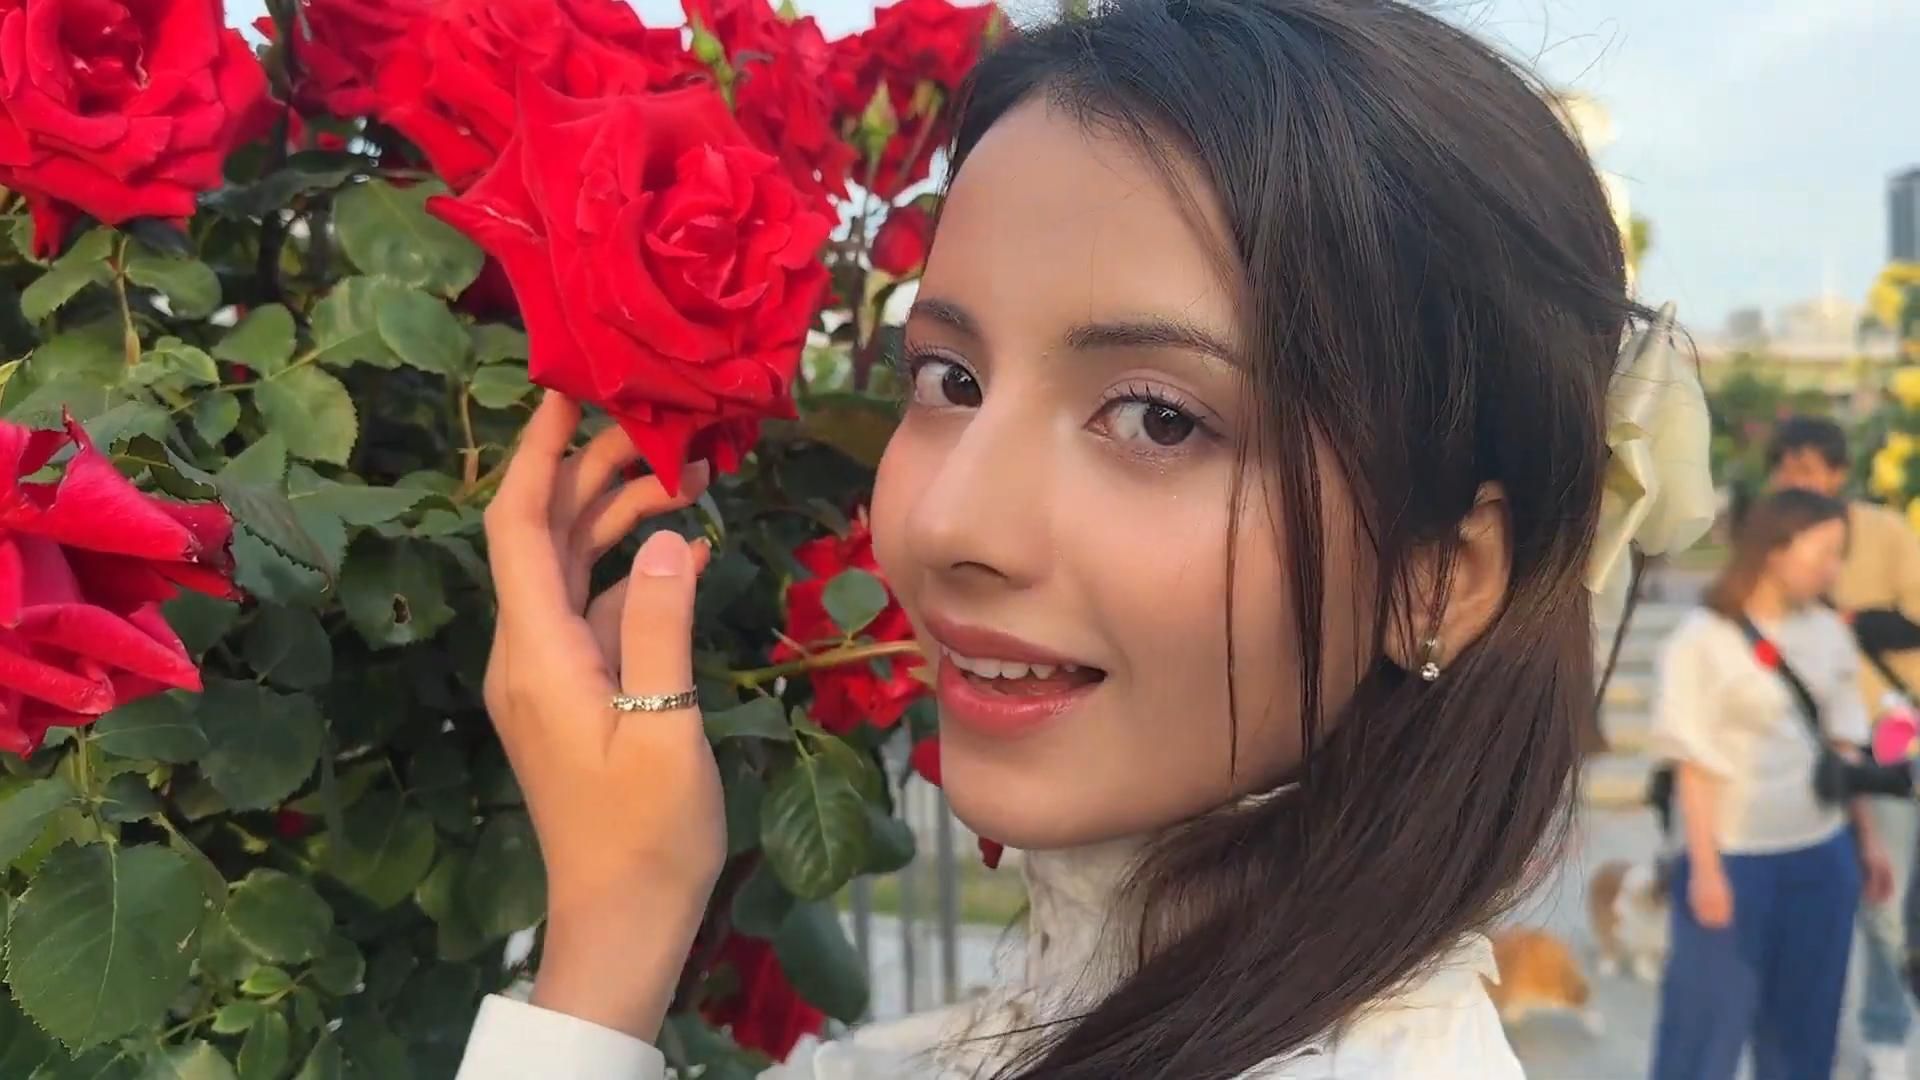 印度女孩去大阪看了一个日本的节日 | 去了日本最大的玫瑰园 | 大约100万朵玫瑰